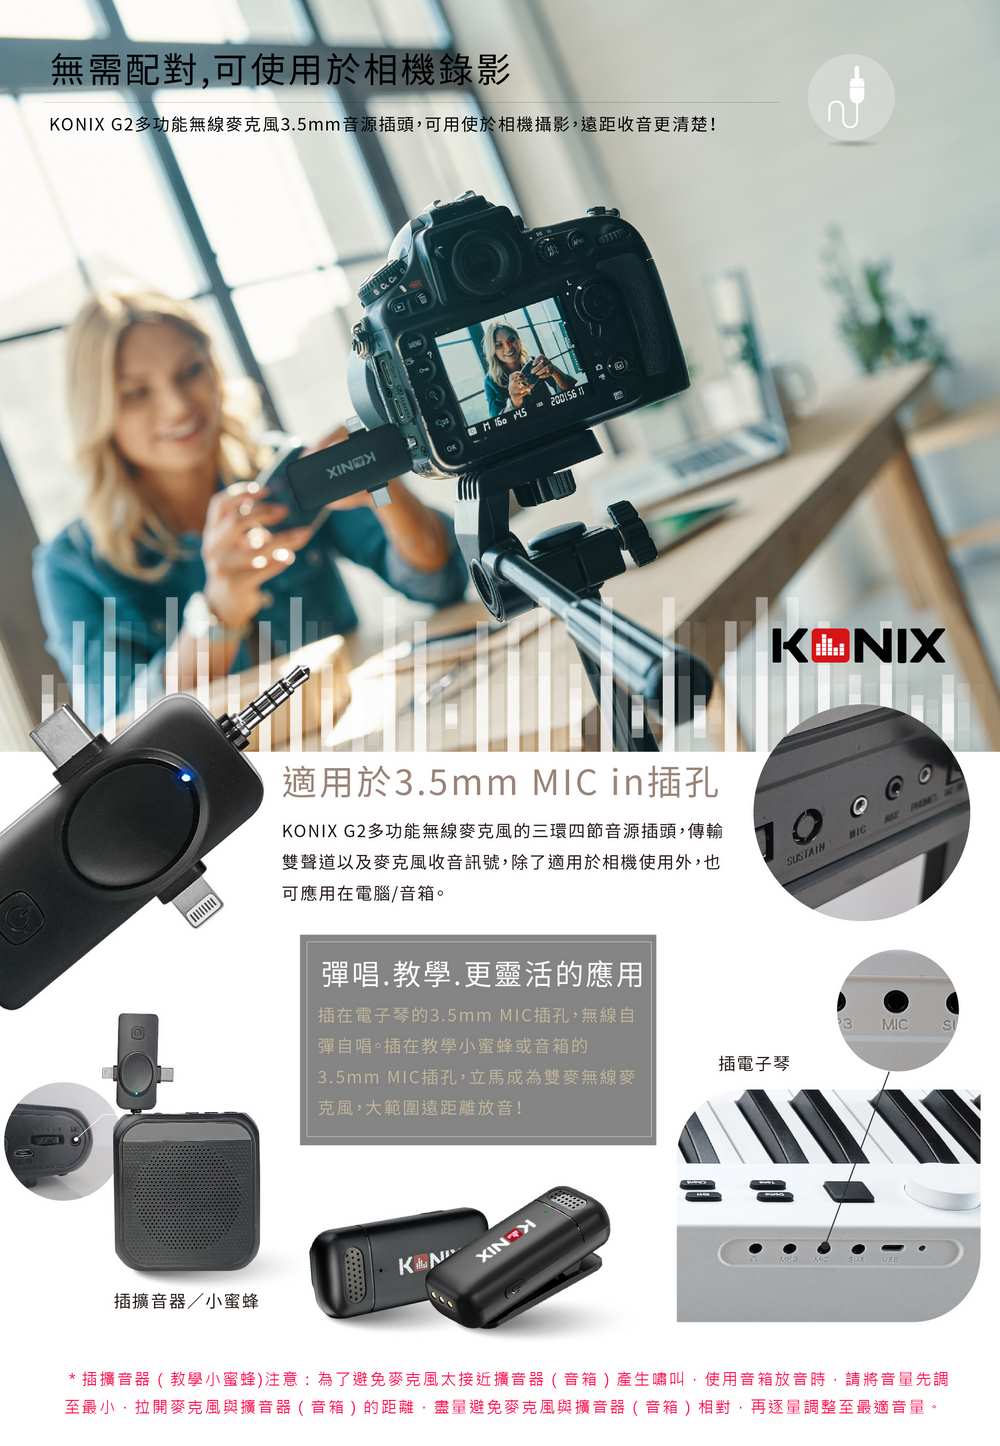 KONIX G3 多功能無線麥克風,智慧降噪,全指向性,360度收音,手機直播